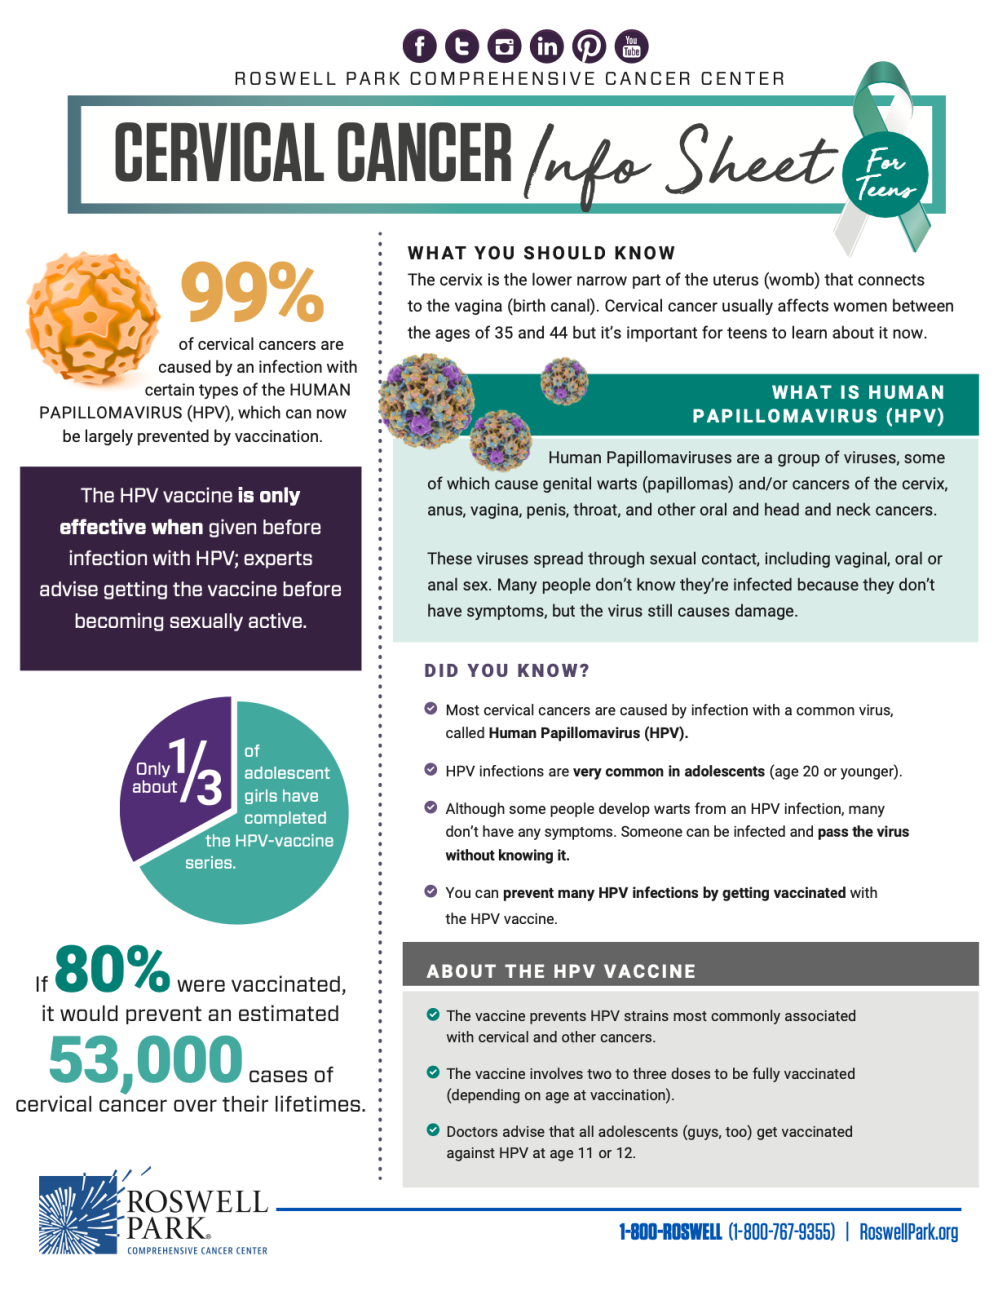 Cervical Cancer Info Sheet For Teens